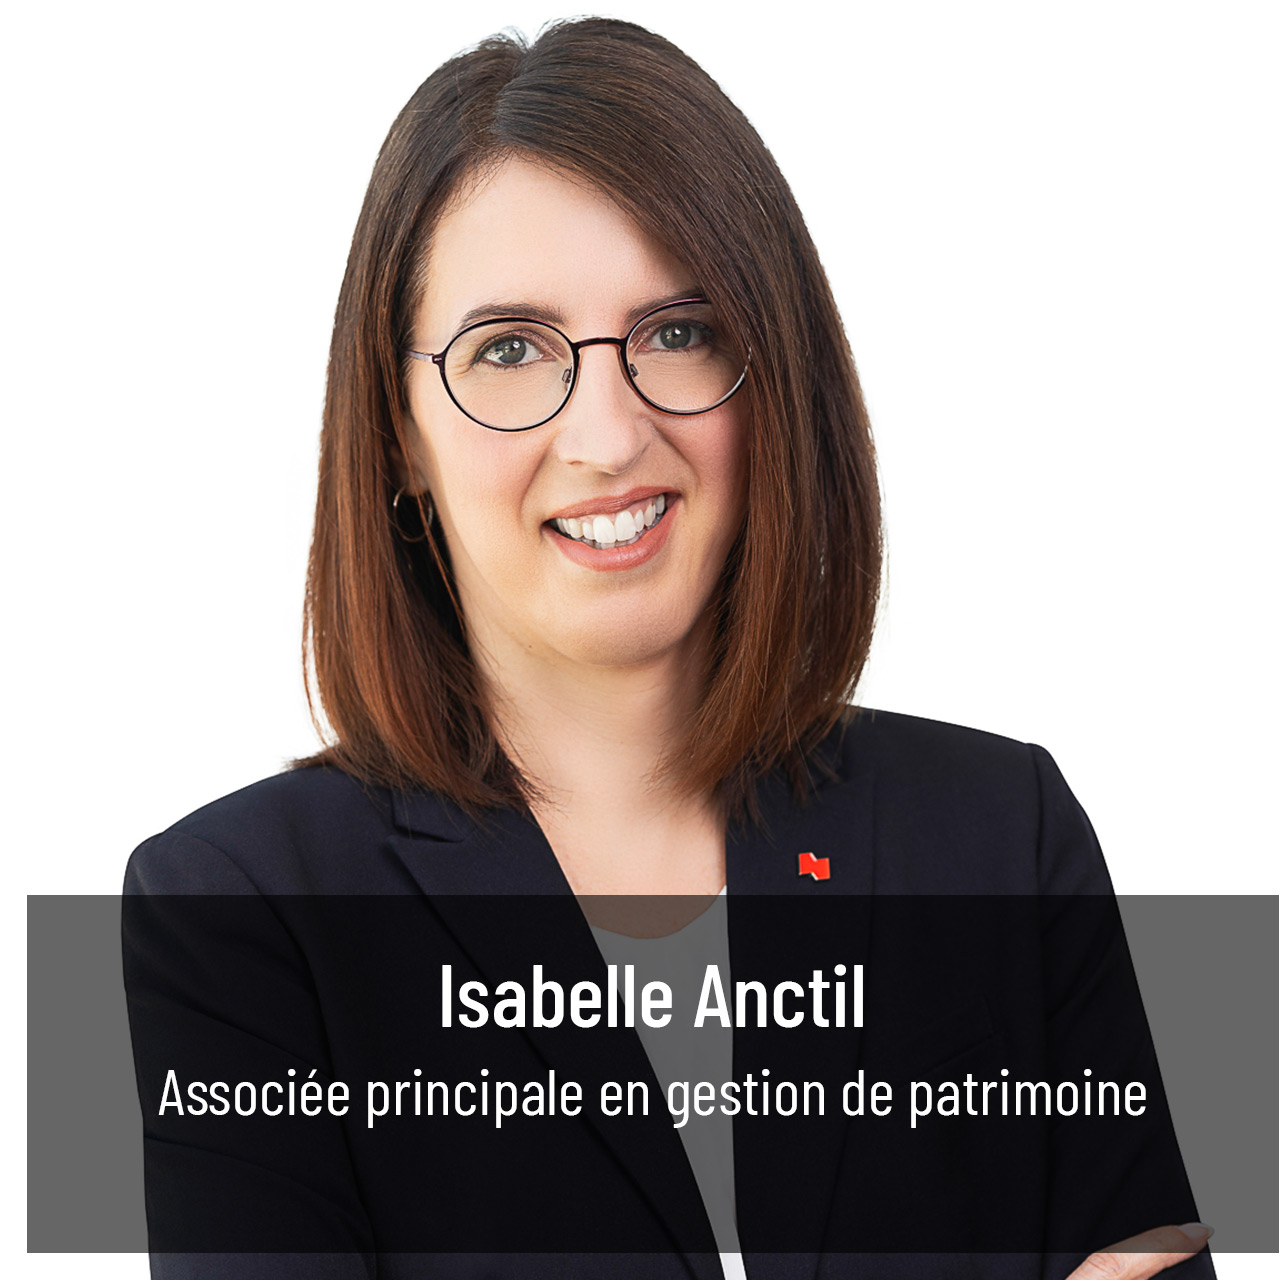 Isabelle Anctil